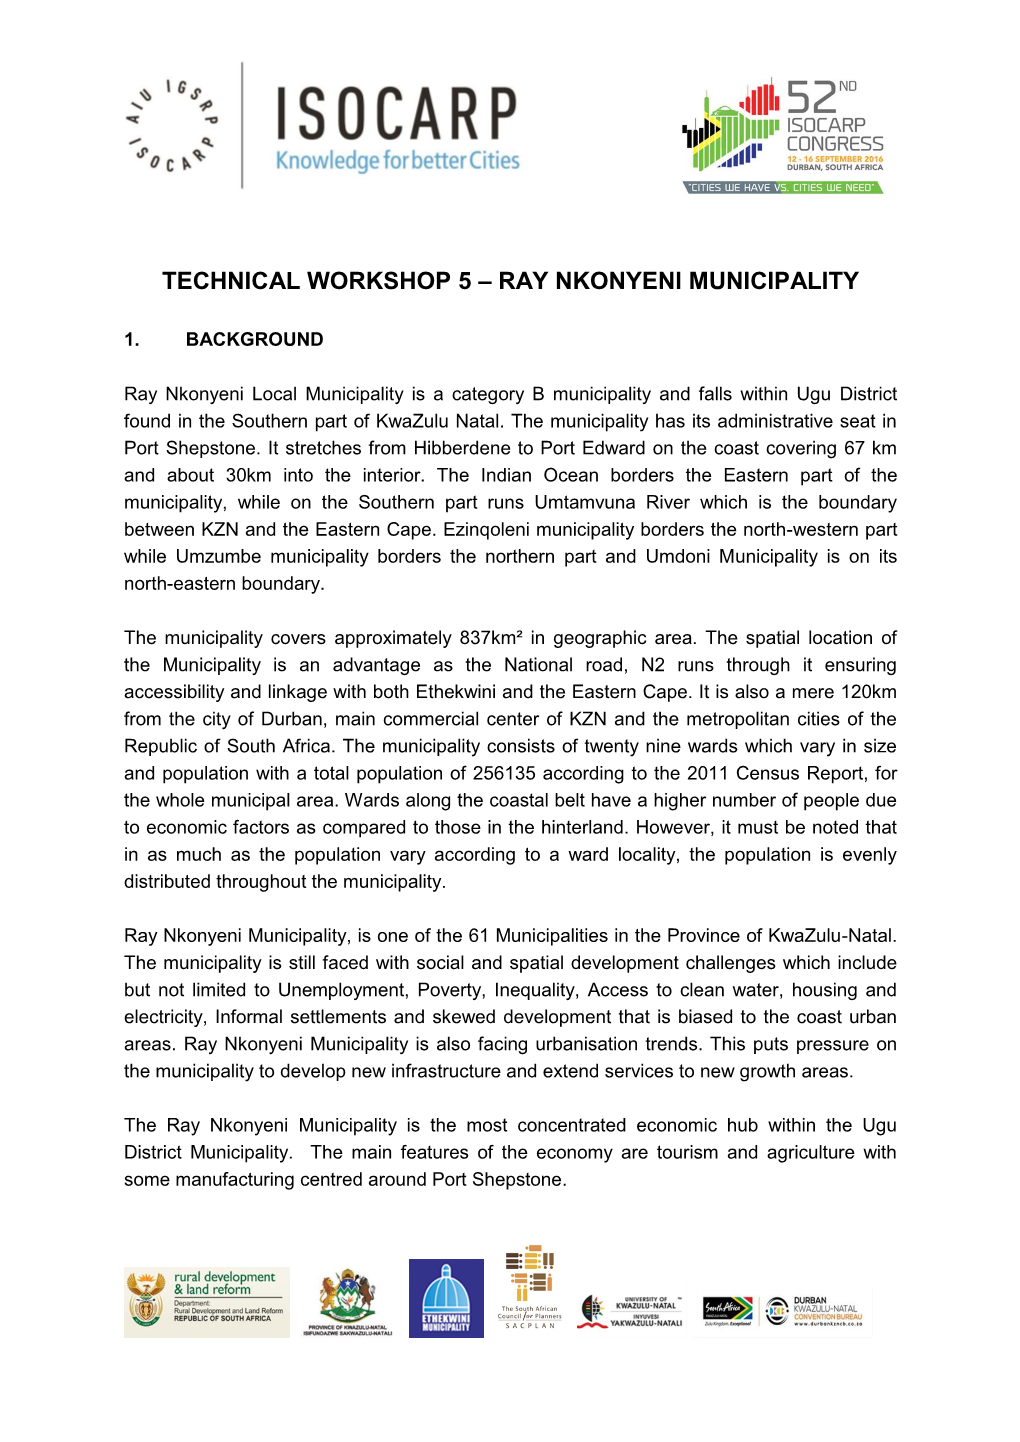 Technical Workshop 5 – Ray Nkonyeni Municipality